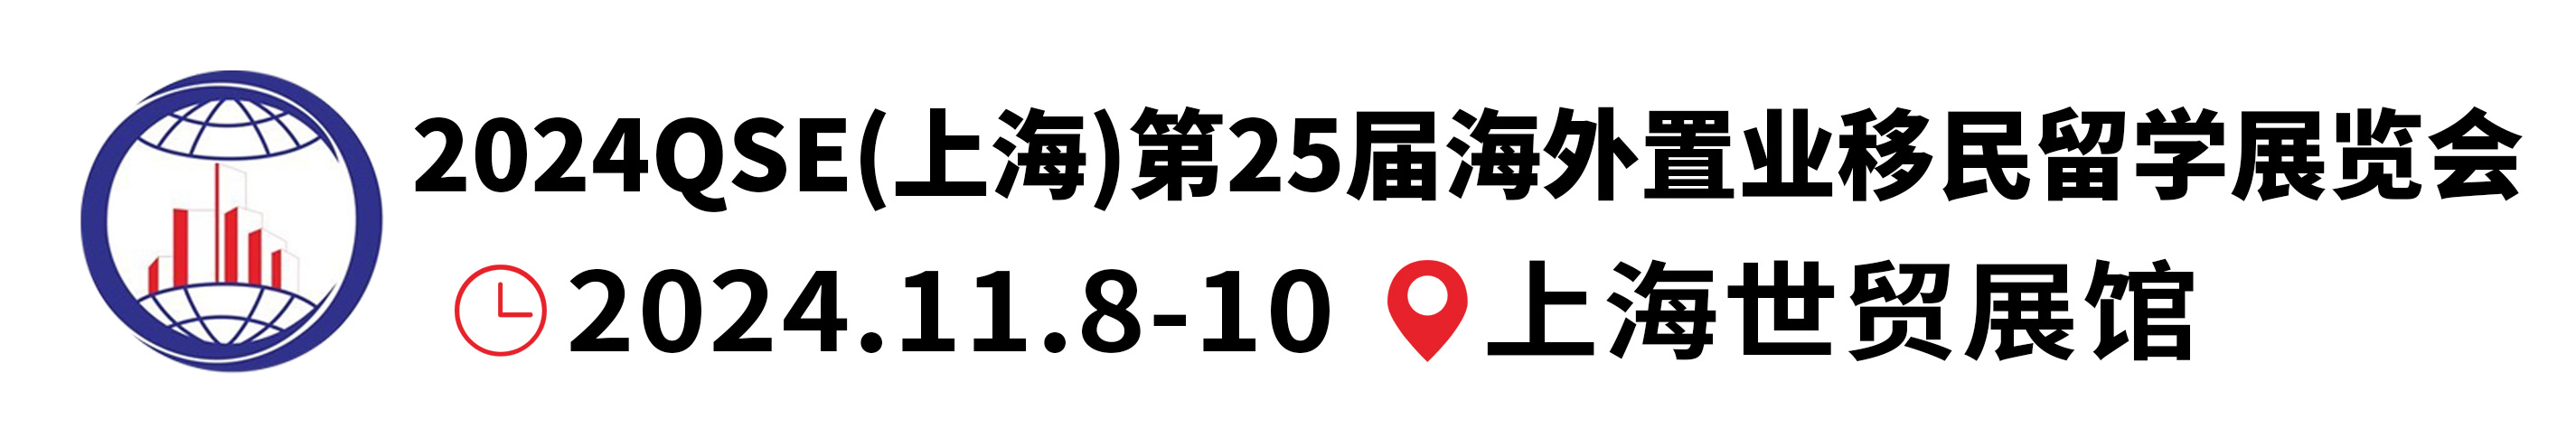 2024上海第25届海外置业移民留学展览会-官方网站